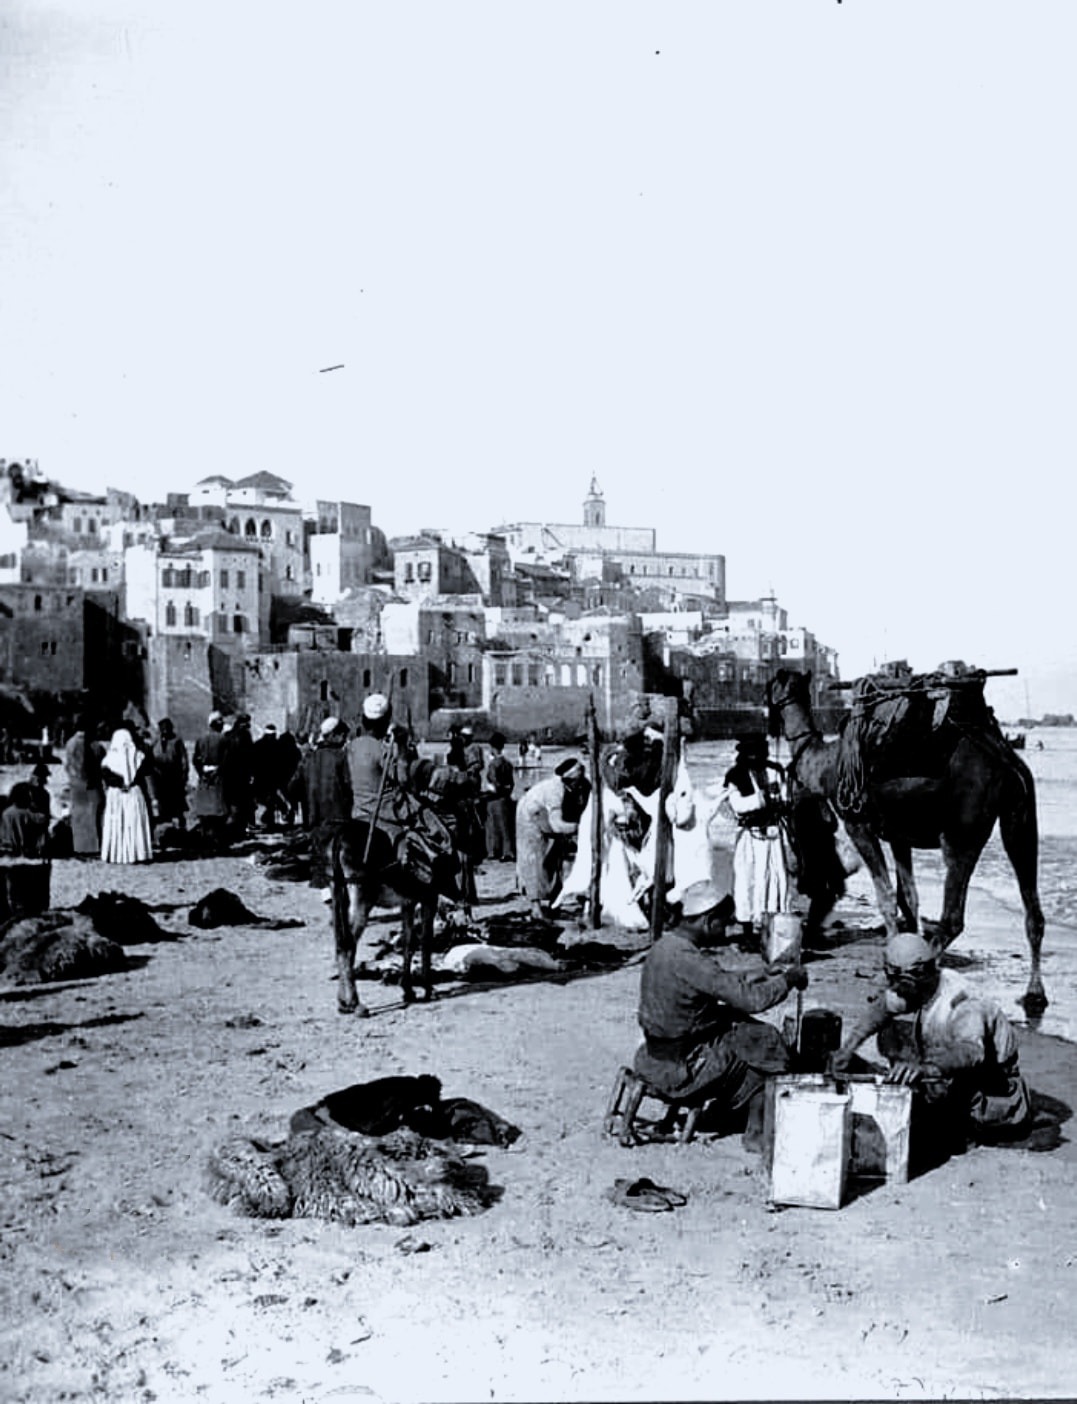  صورة نادرة لمشهد من حي ارشيد في يافا عام 1922 